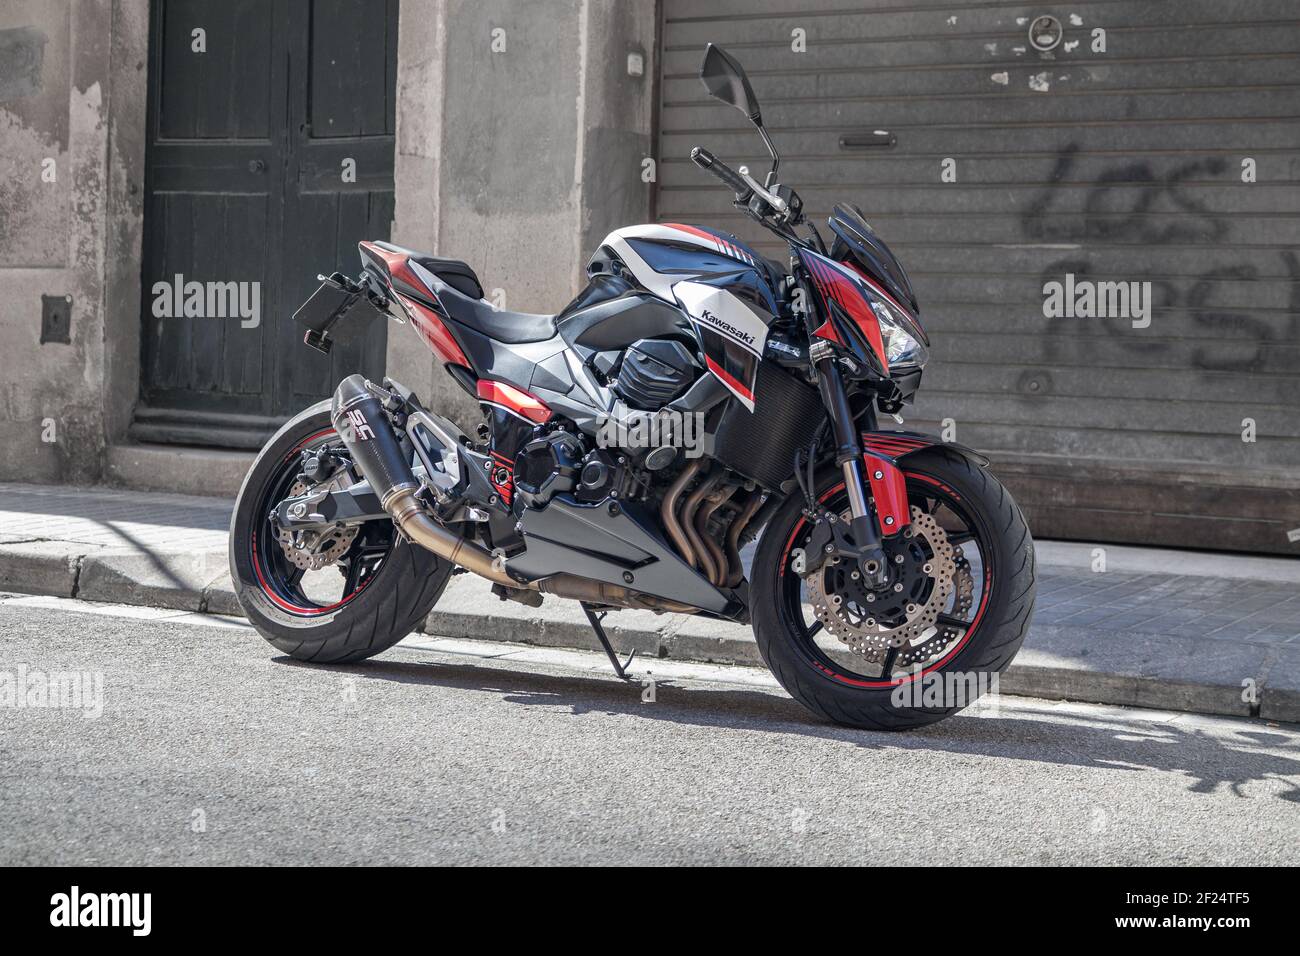 SABADELL, ESPAÑA-9 DE MARZO de 2021: Motocicleta Kawasaki Z 800 versión e (2012 - 2016) Foto de stock